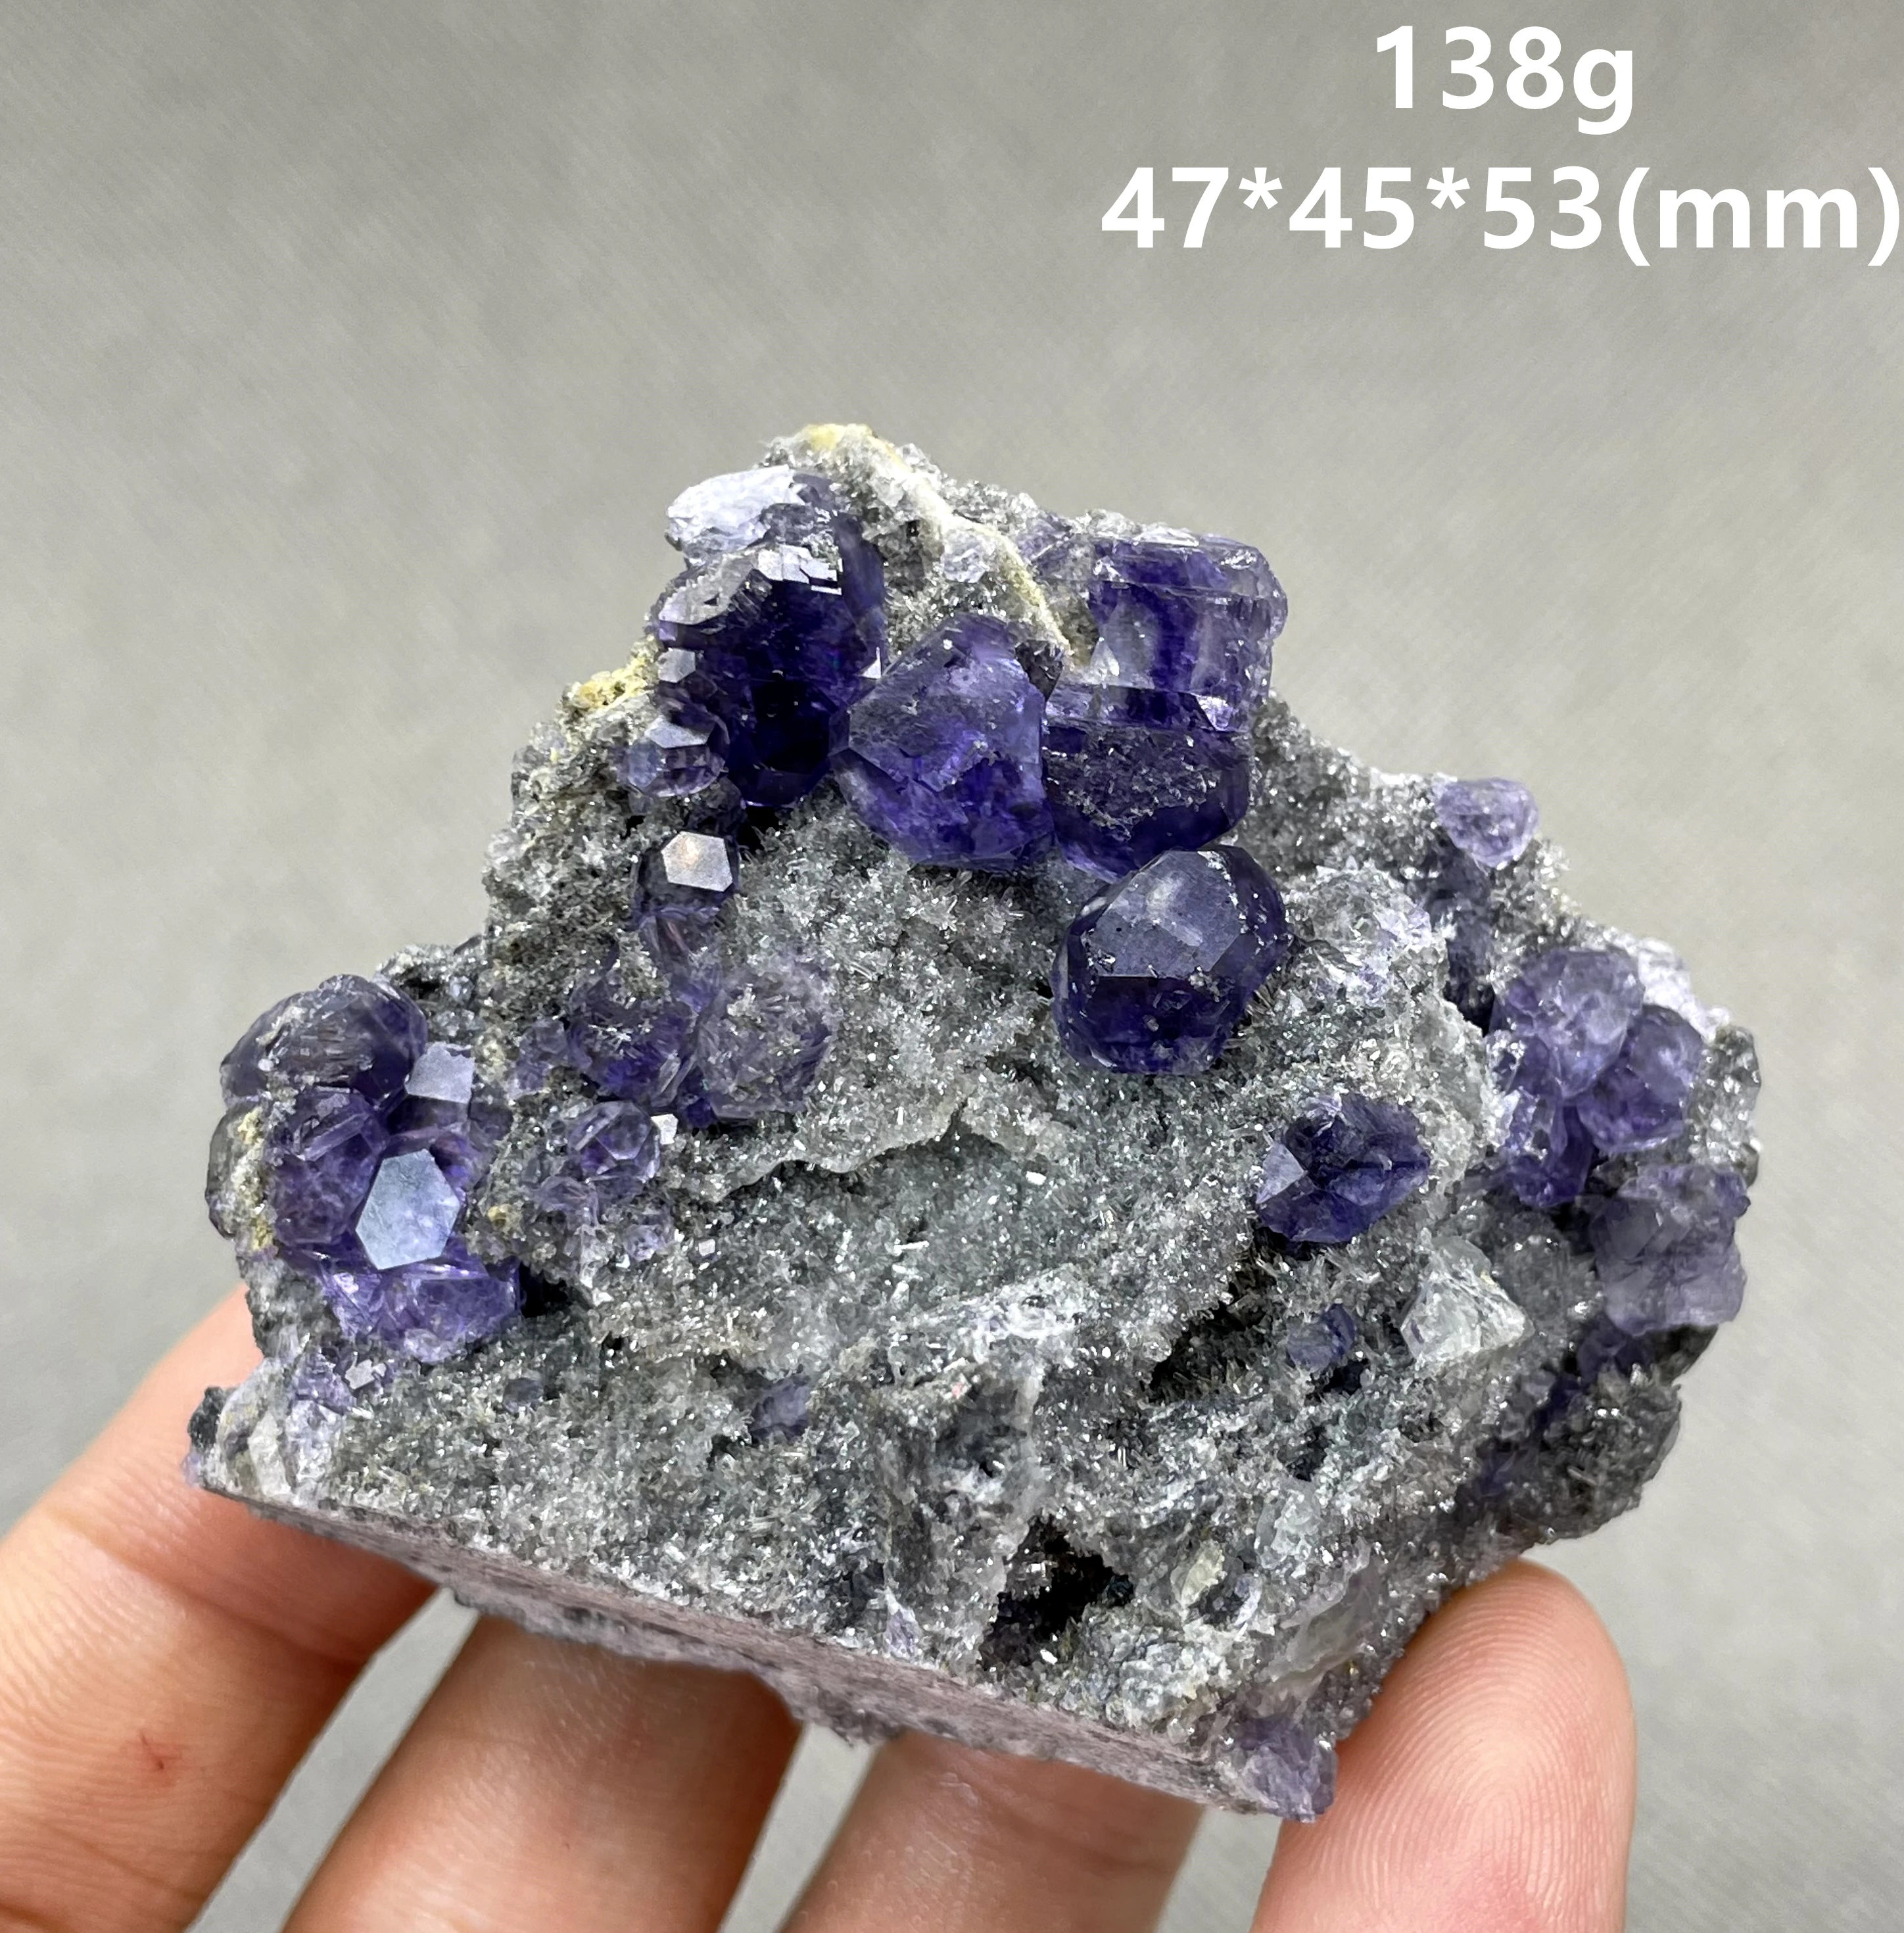 

Новинка! Лучше всего! 100% натуральный полигедрический Танзанит сине-фиолетовый флюорит, кластеры минералов, образцы, драгоценные камни и кри...